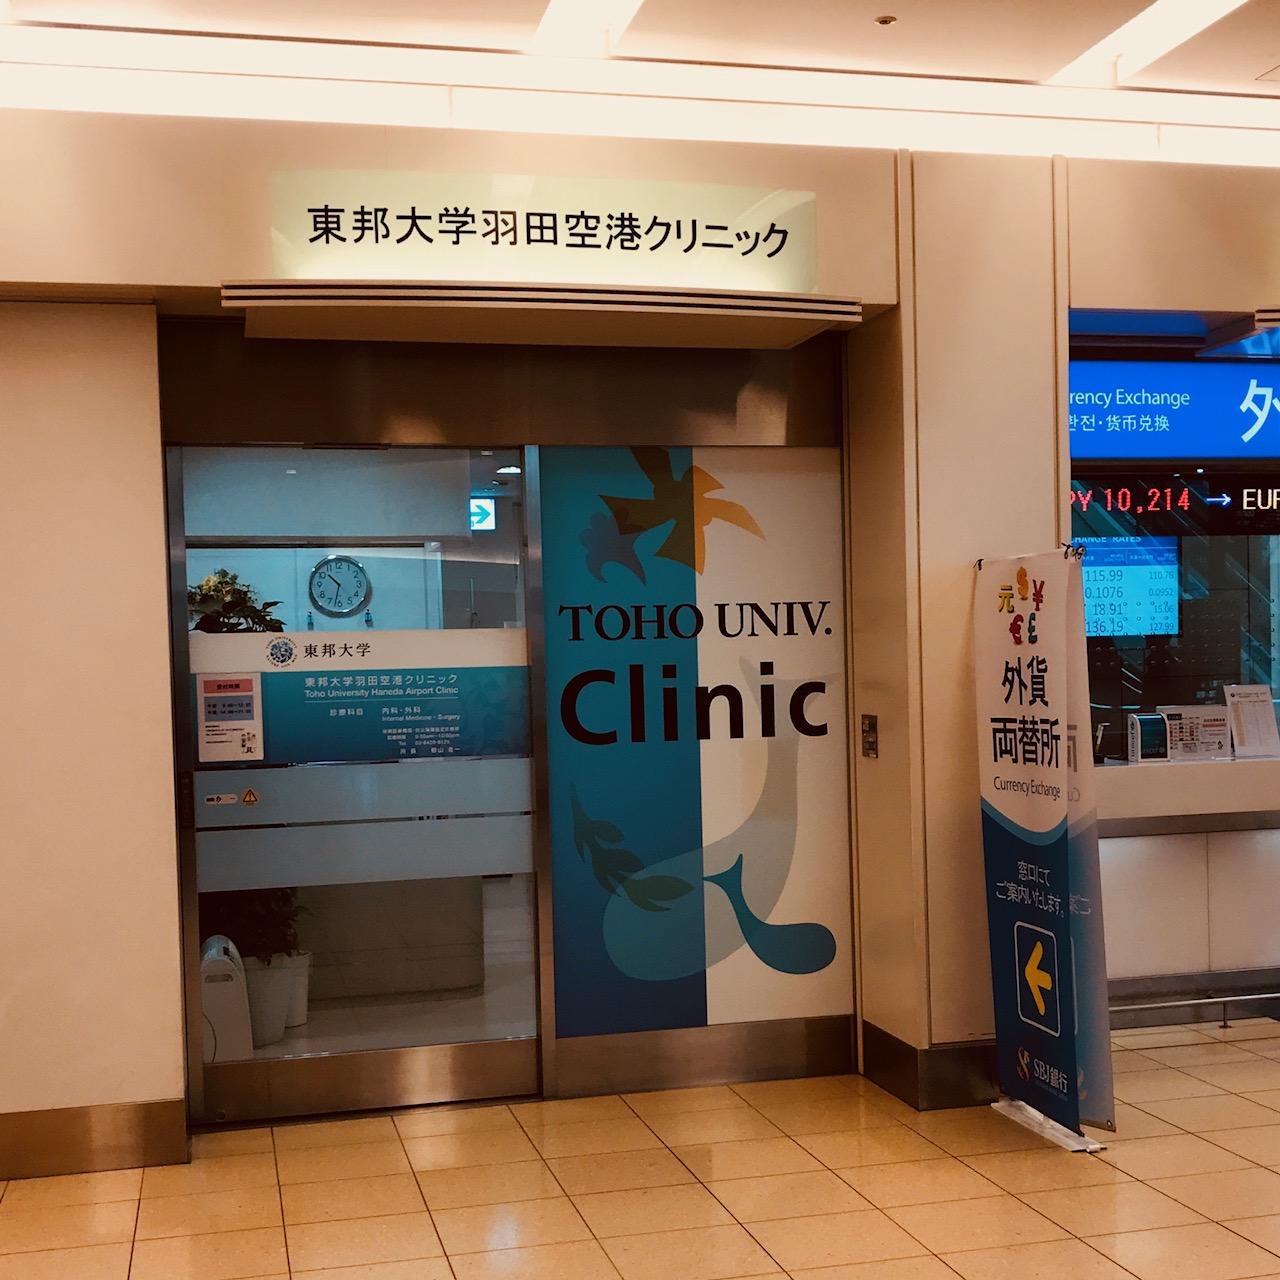 羽田 空港 診療 所